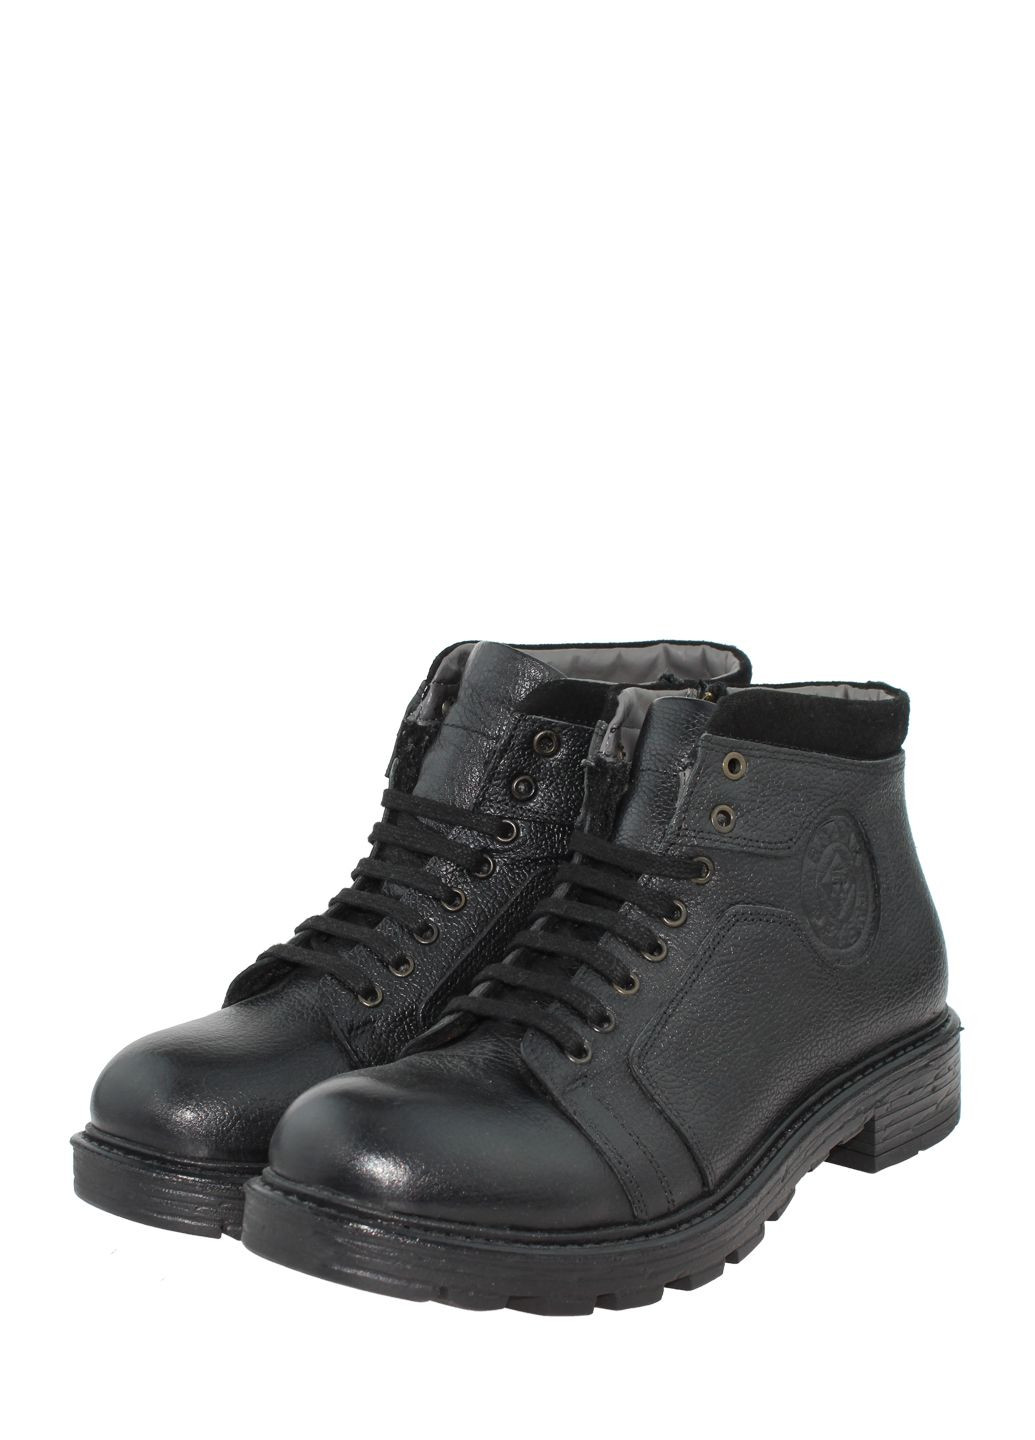 Черные зимние ботинки g1999.01 черный Goover